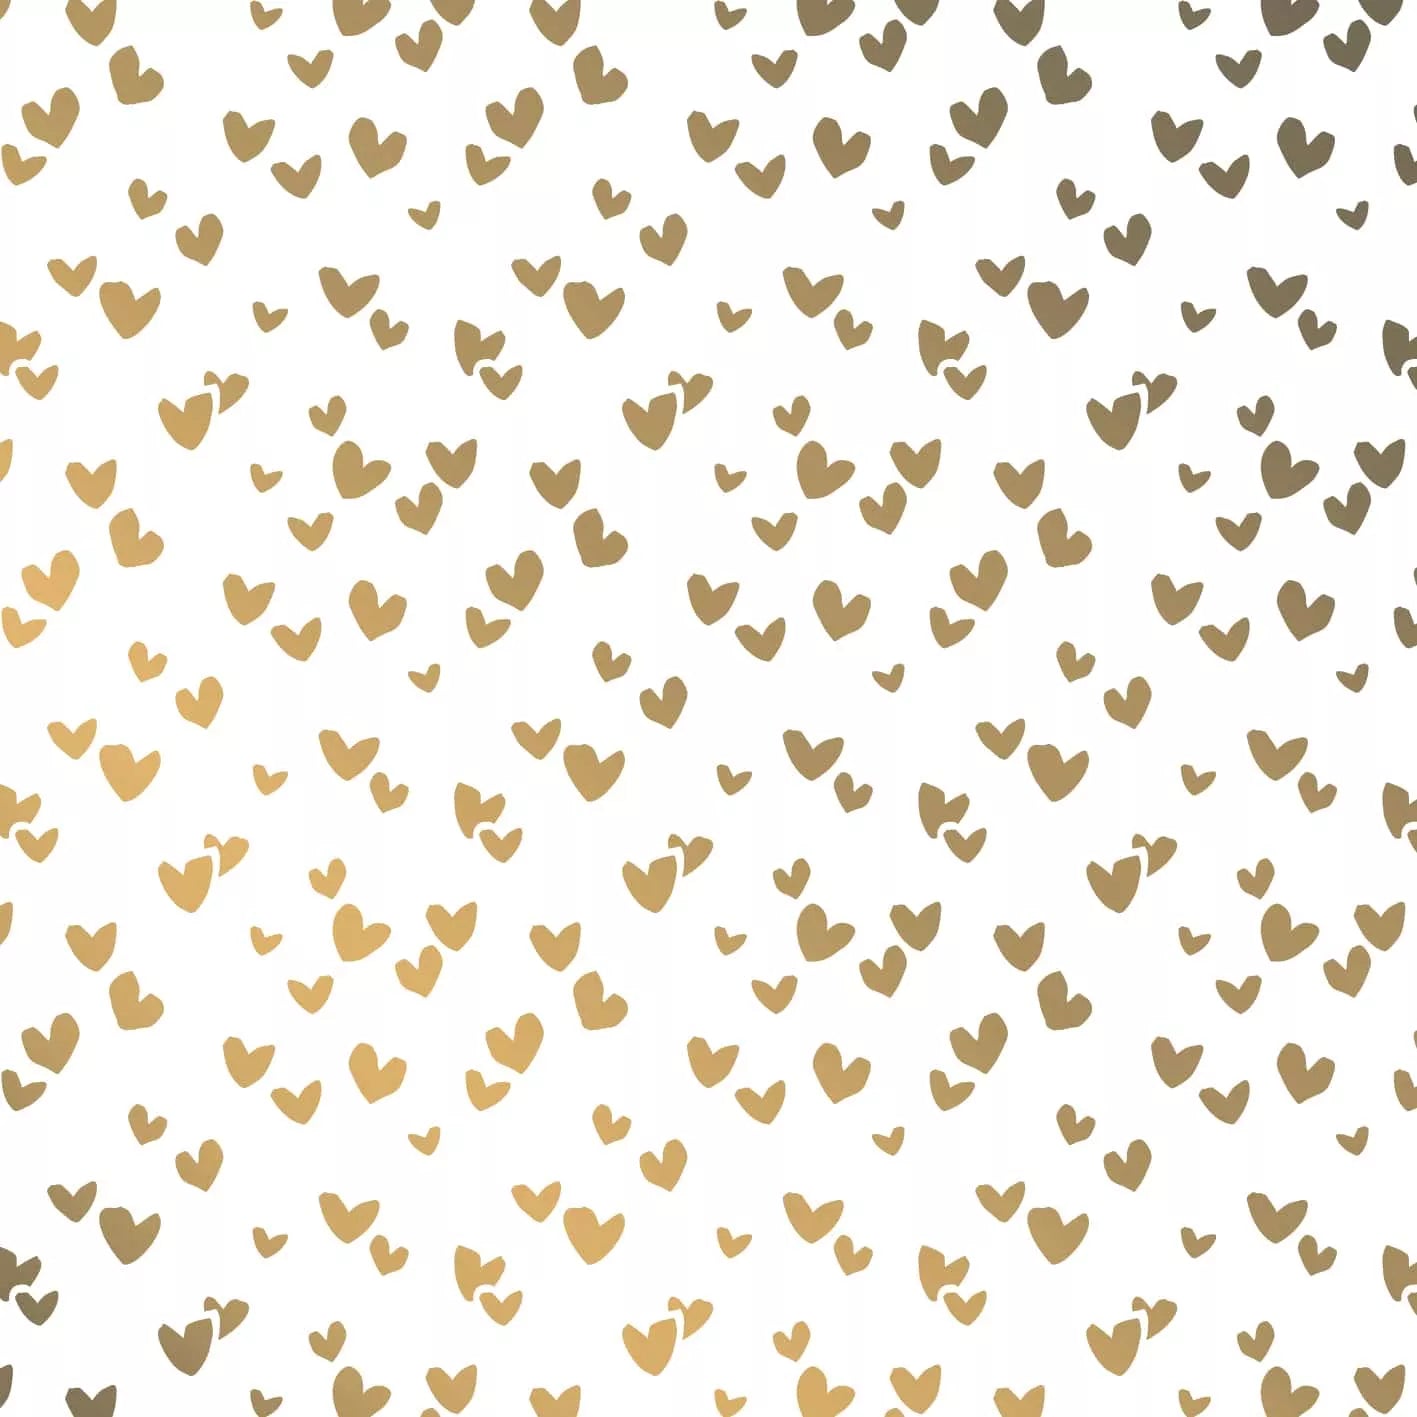 Zijdepapier - gouden hartjes